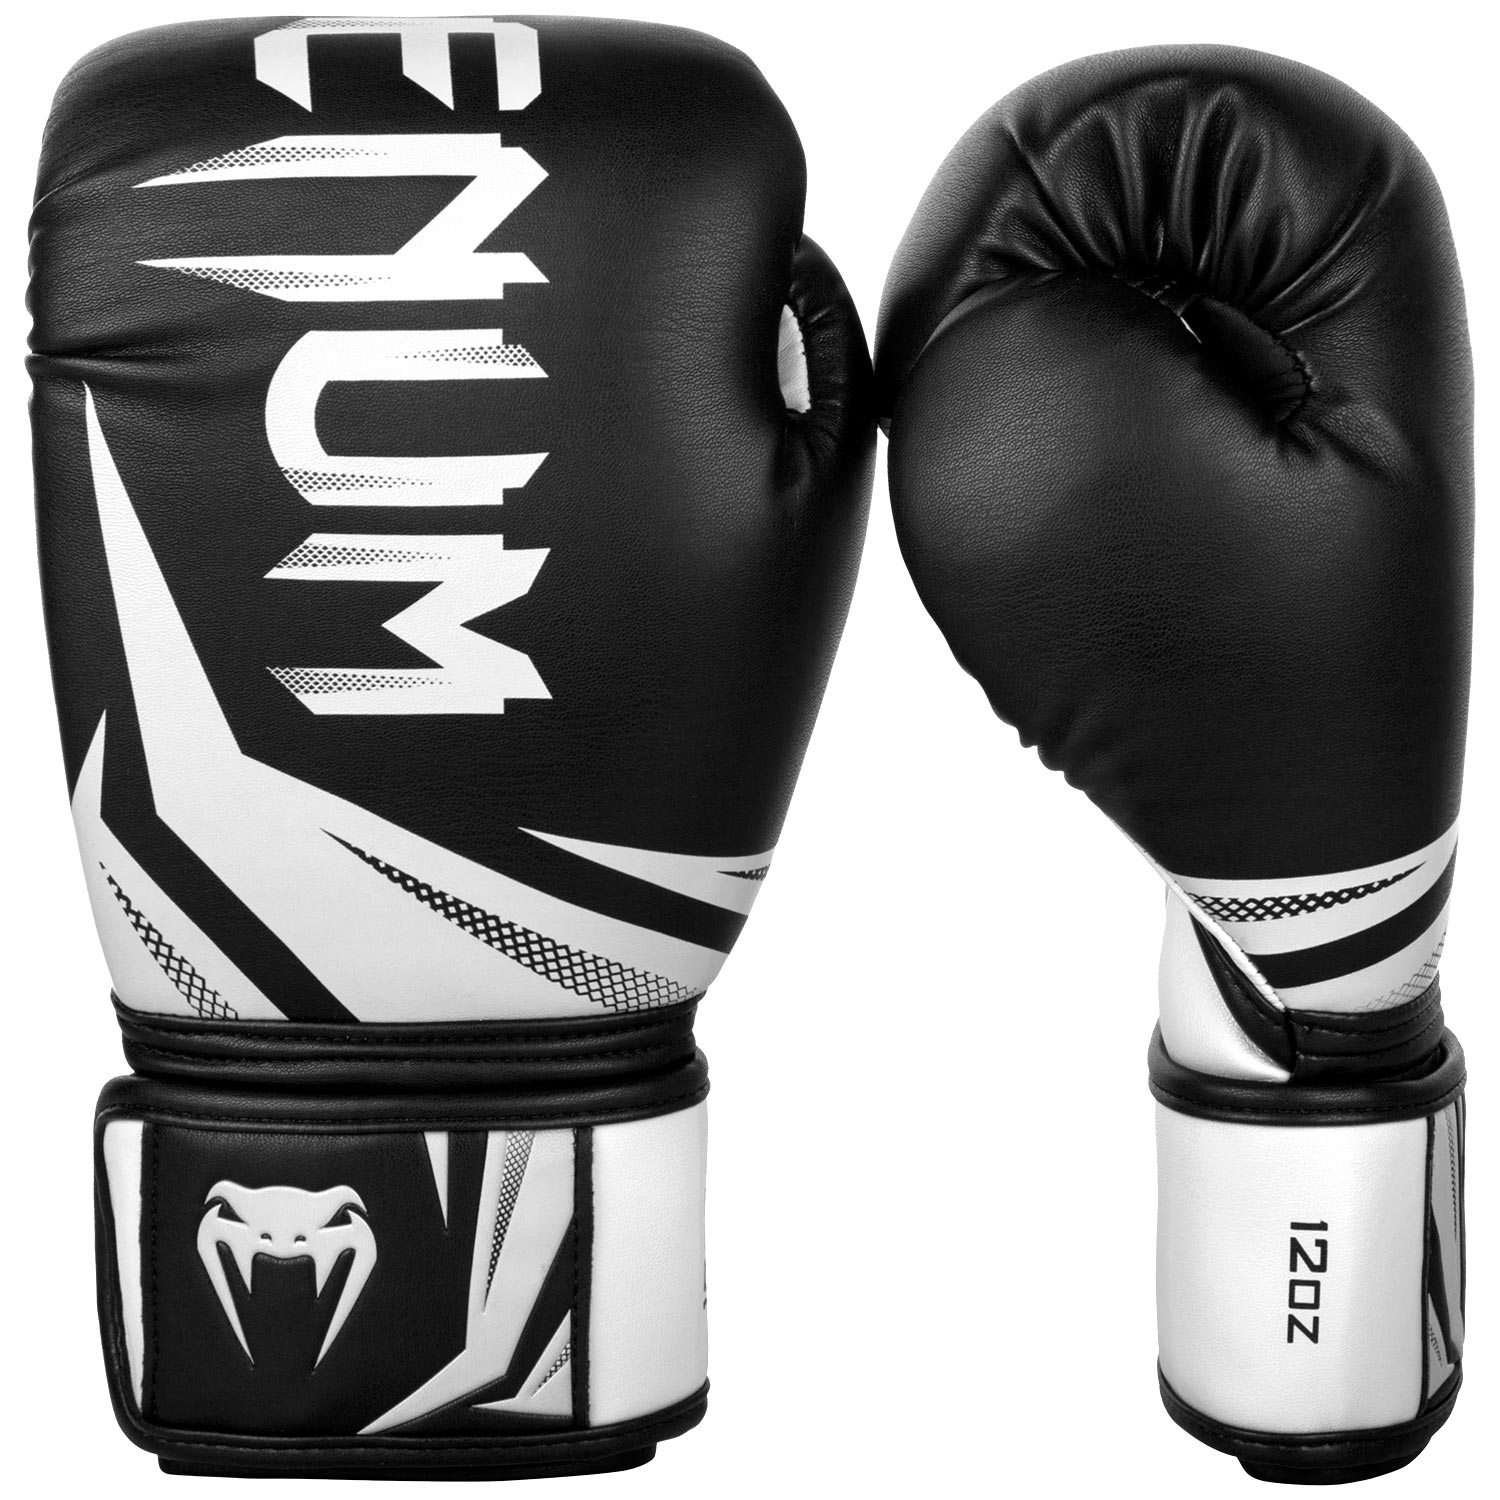 Boxerské rukavice Challenger 3.0 černé/bílé VENUM vel. 14 oz